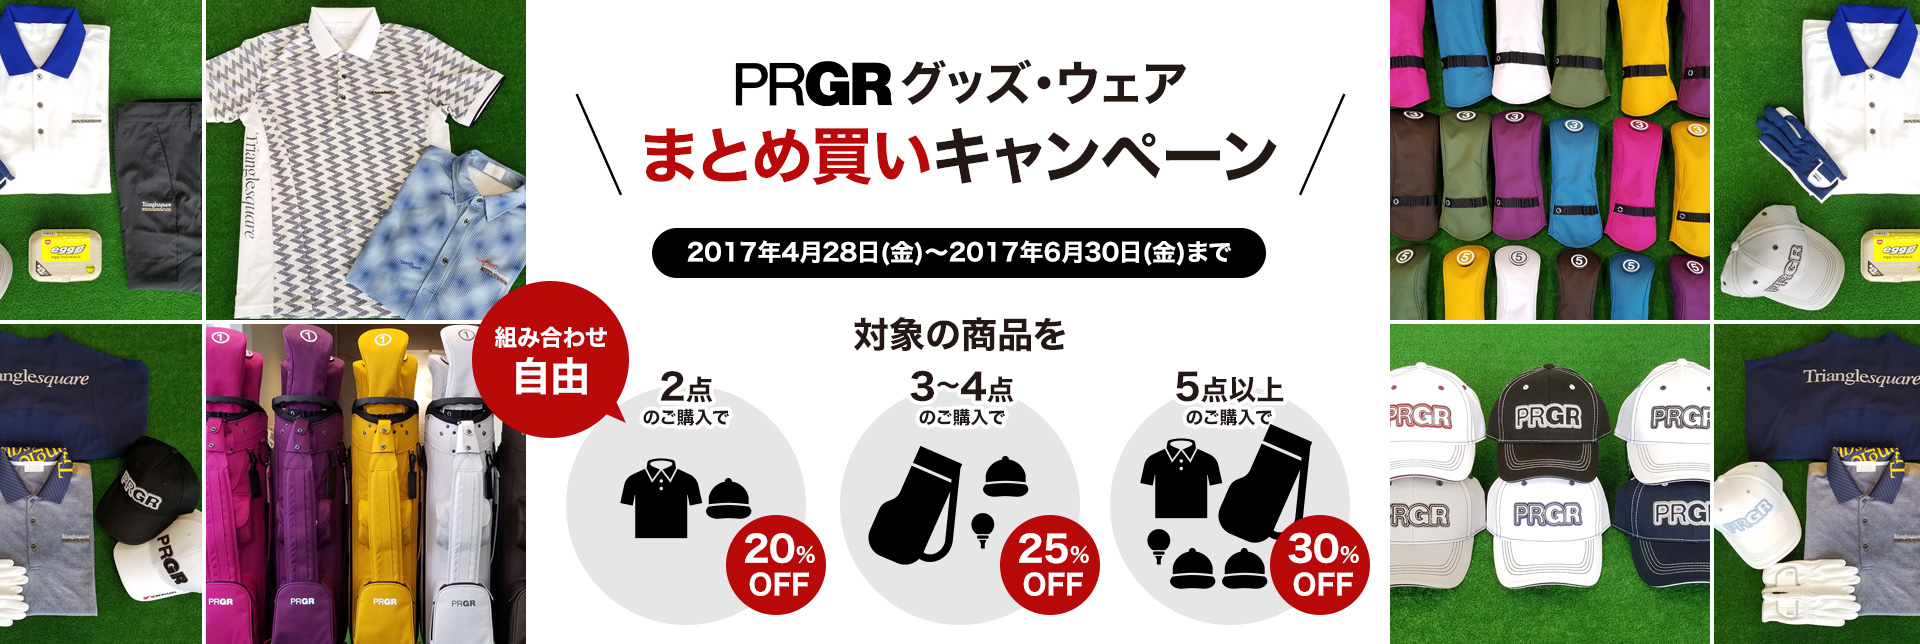 PRGR グッズ・ウェアまとめ買いキャンペーン